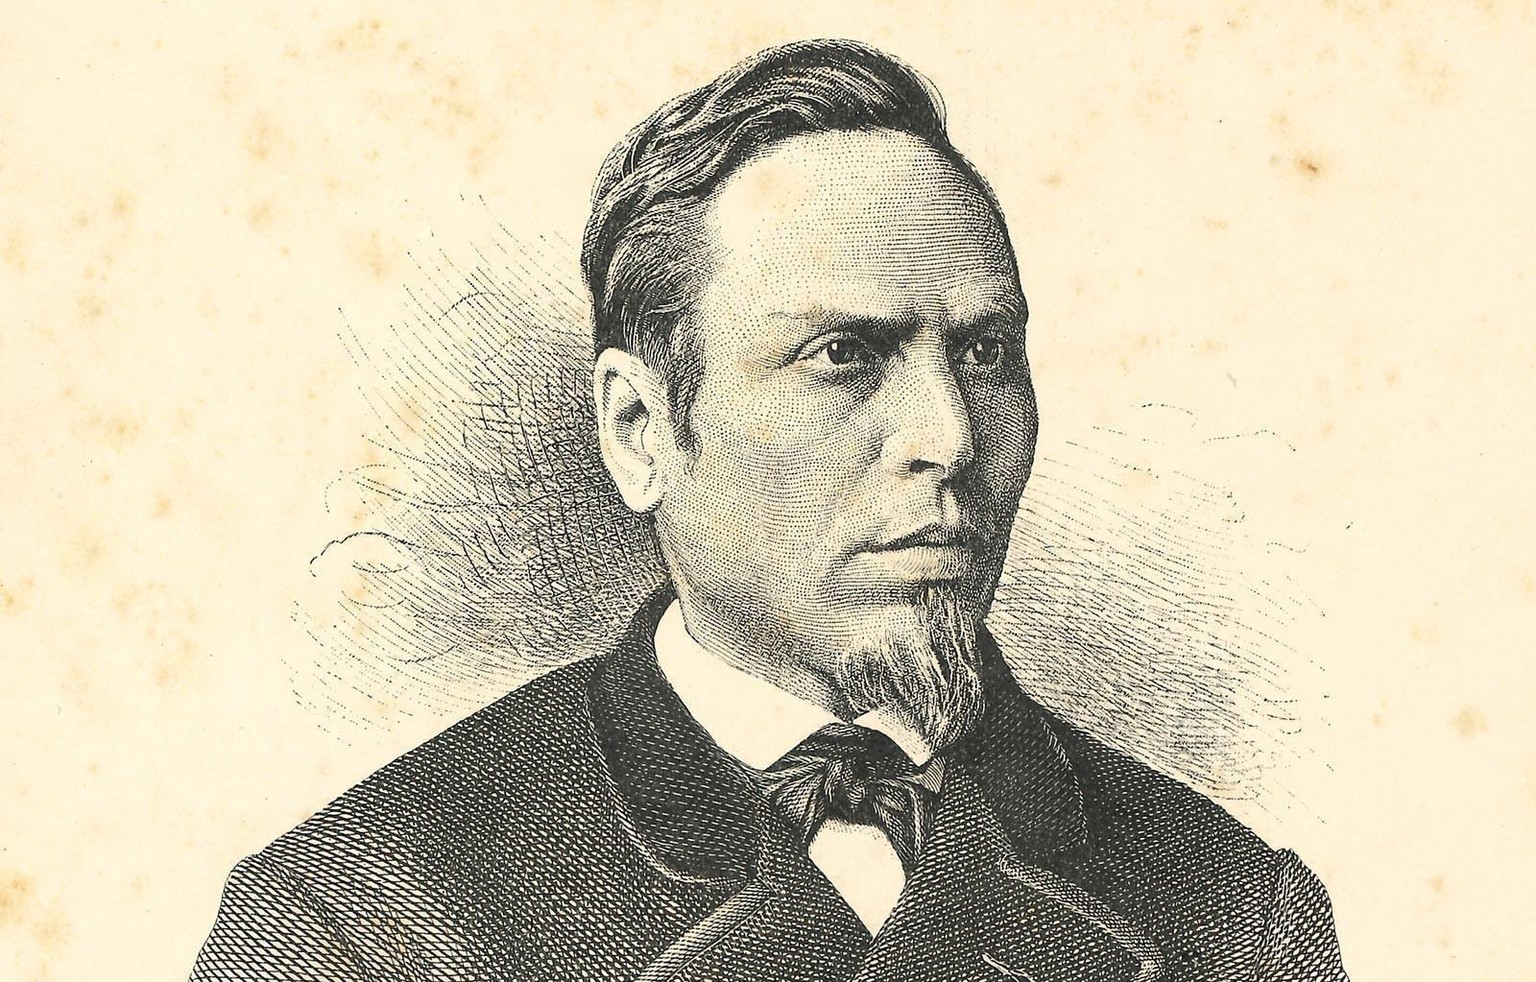 Porträt von Alois Wyrsch, der als erster nicht-weisser Politiker Schweizer Geschichte geschrieben hat.